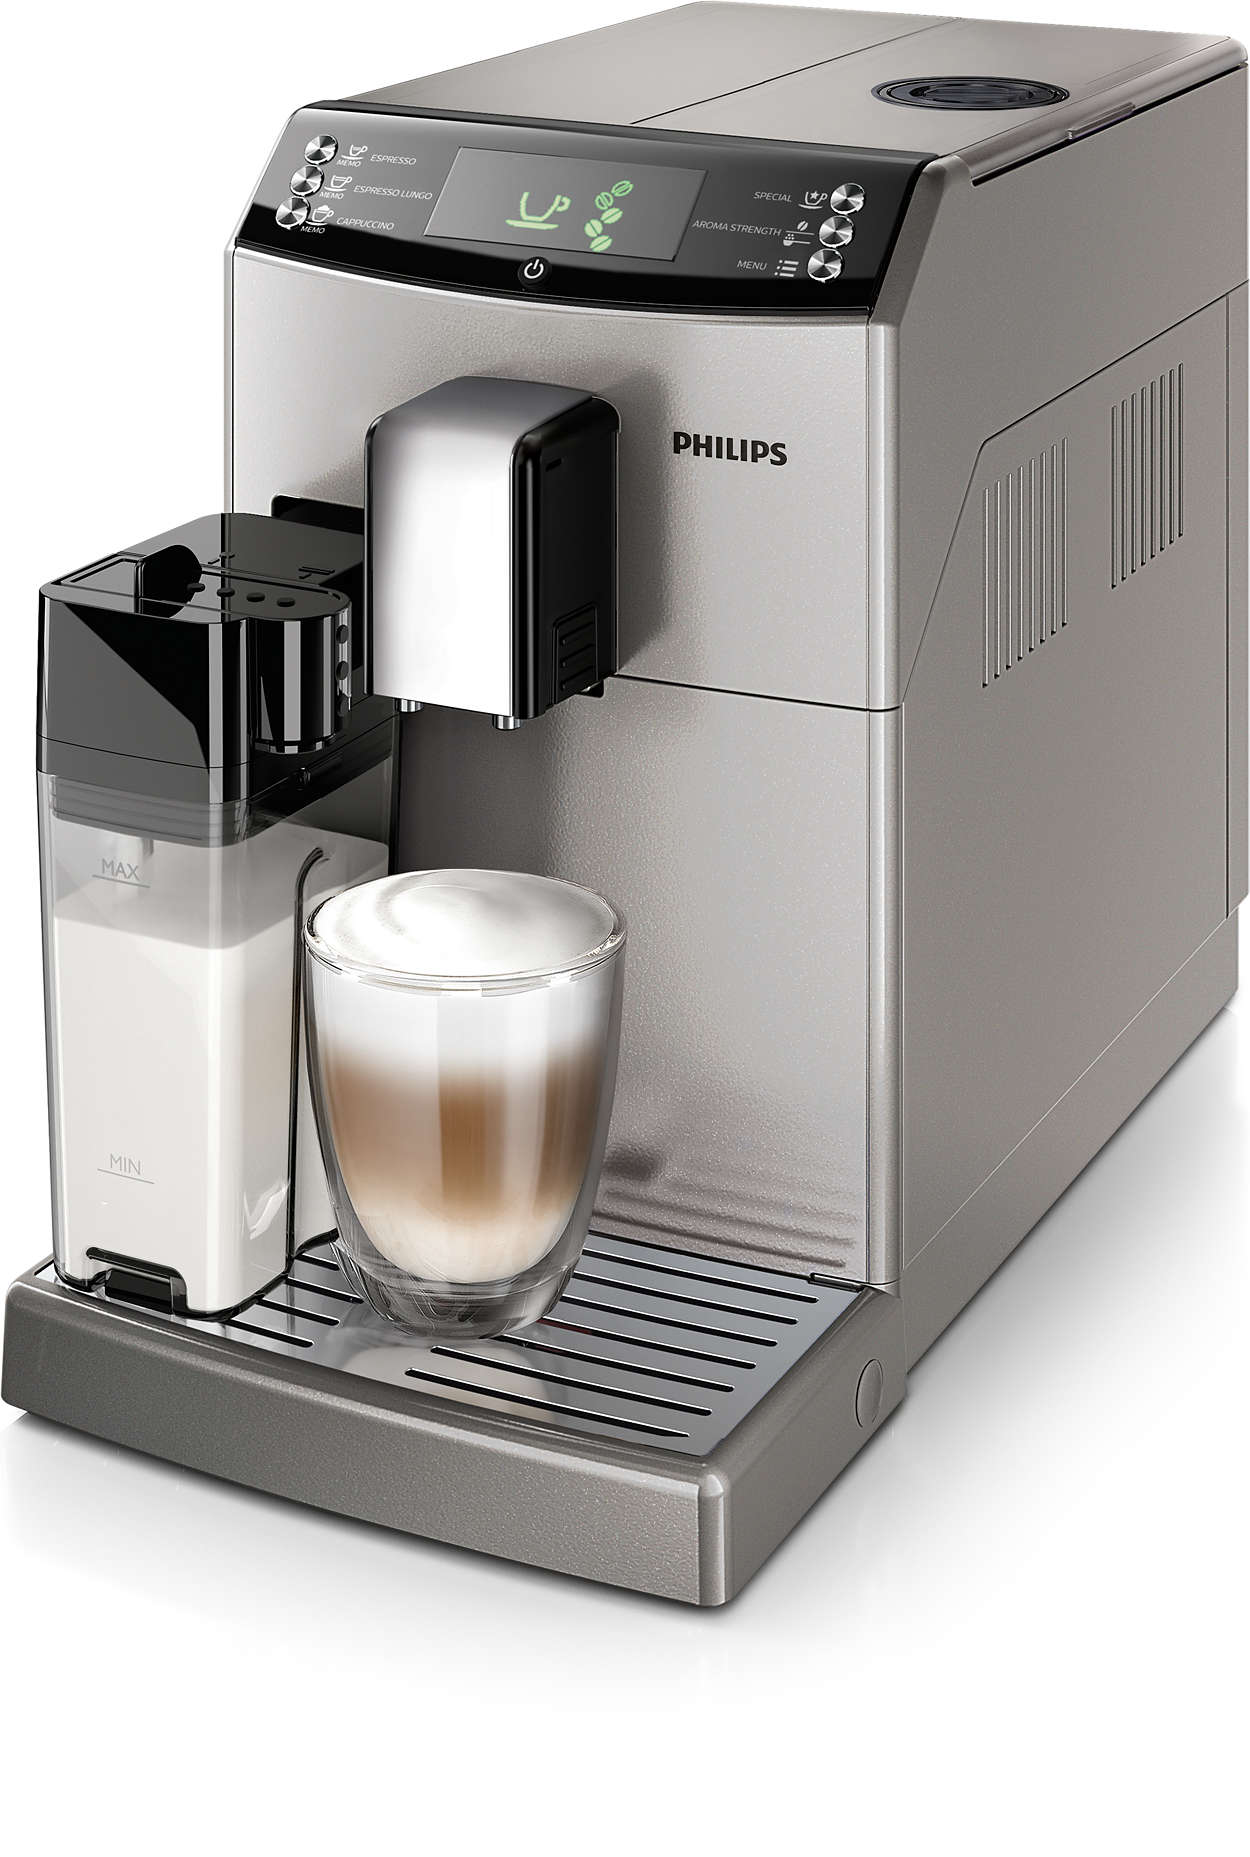 Pyszne espresso i cappuccino za jednym naciśnięciem przycisku